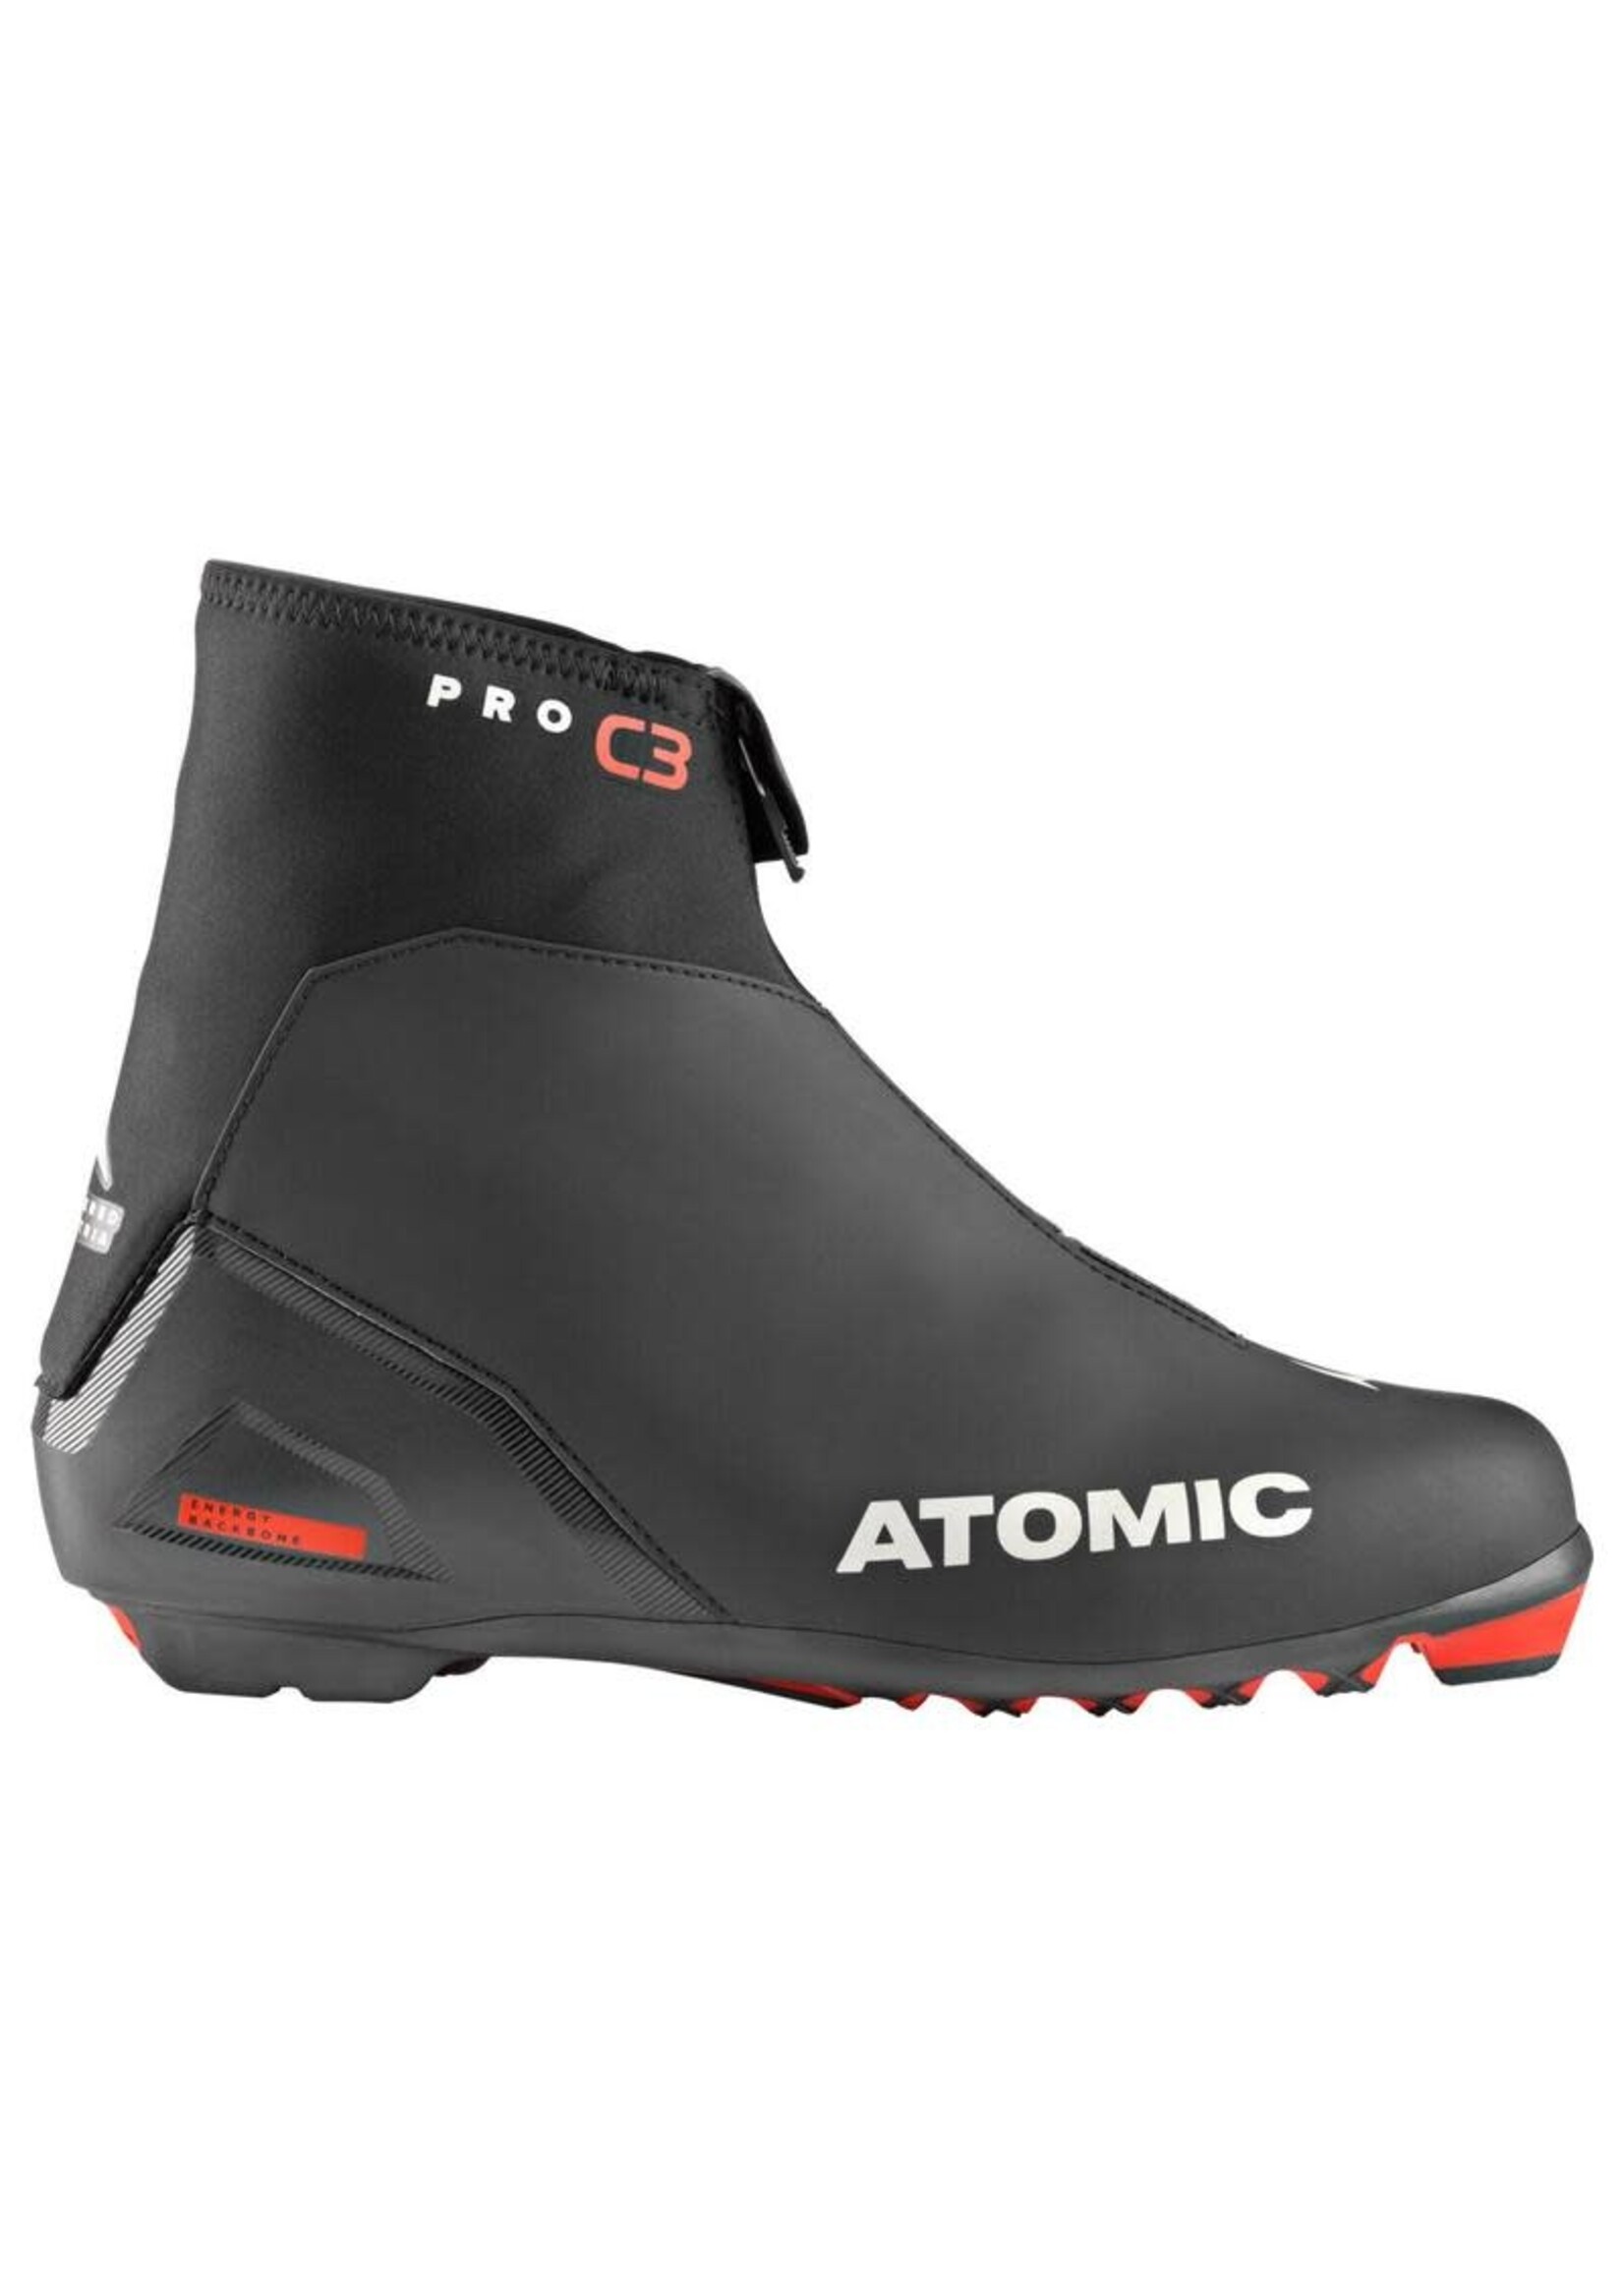 Atomic Nordic Classic Boot Pro C3